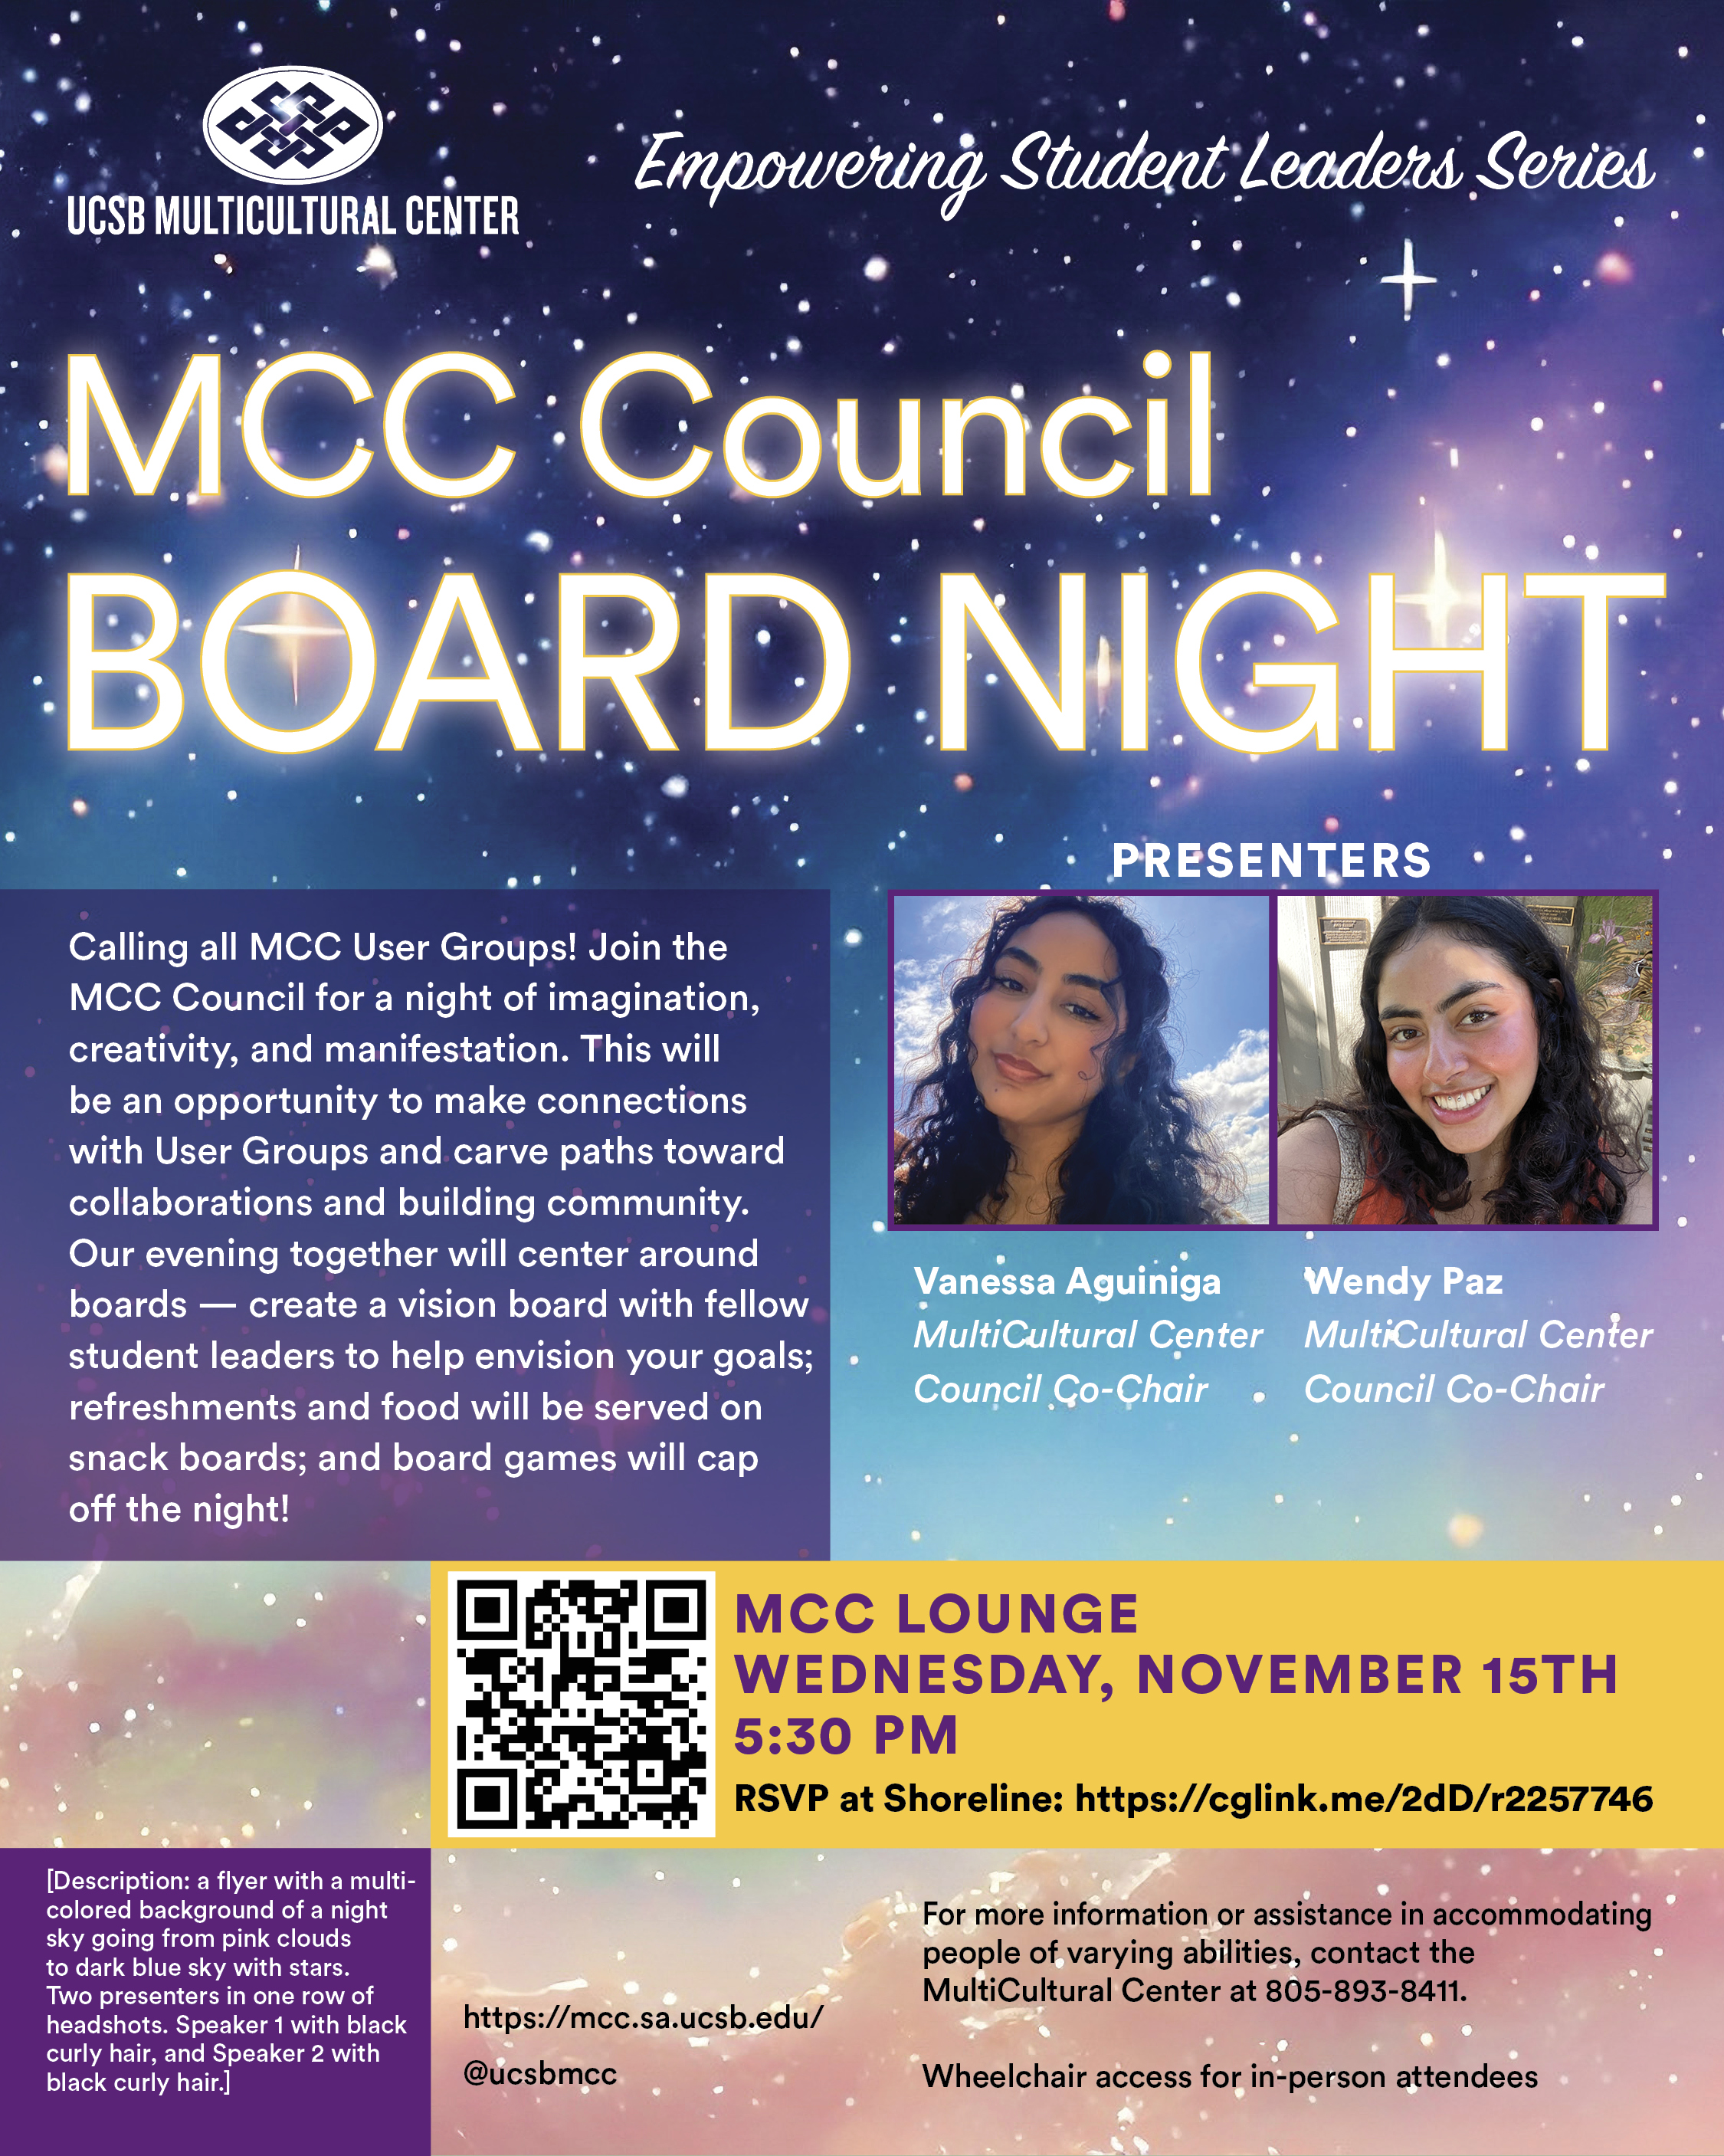 MCC Council Board Night